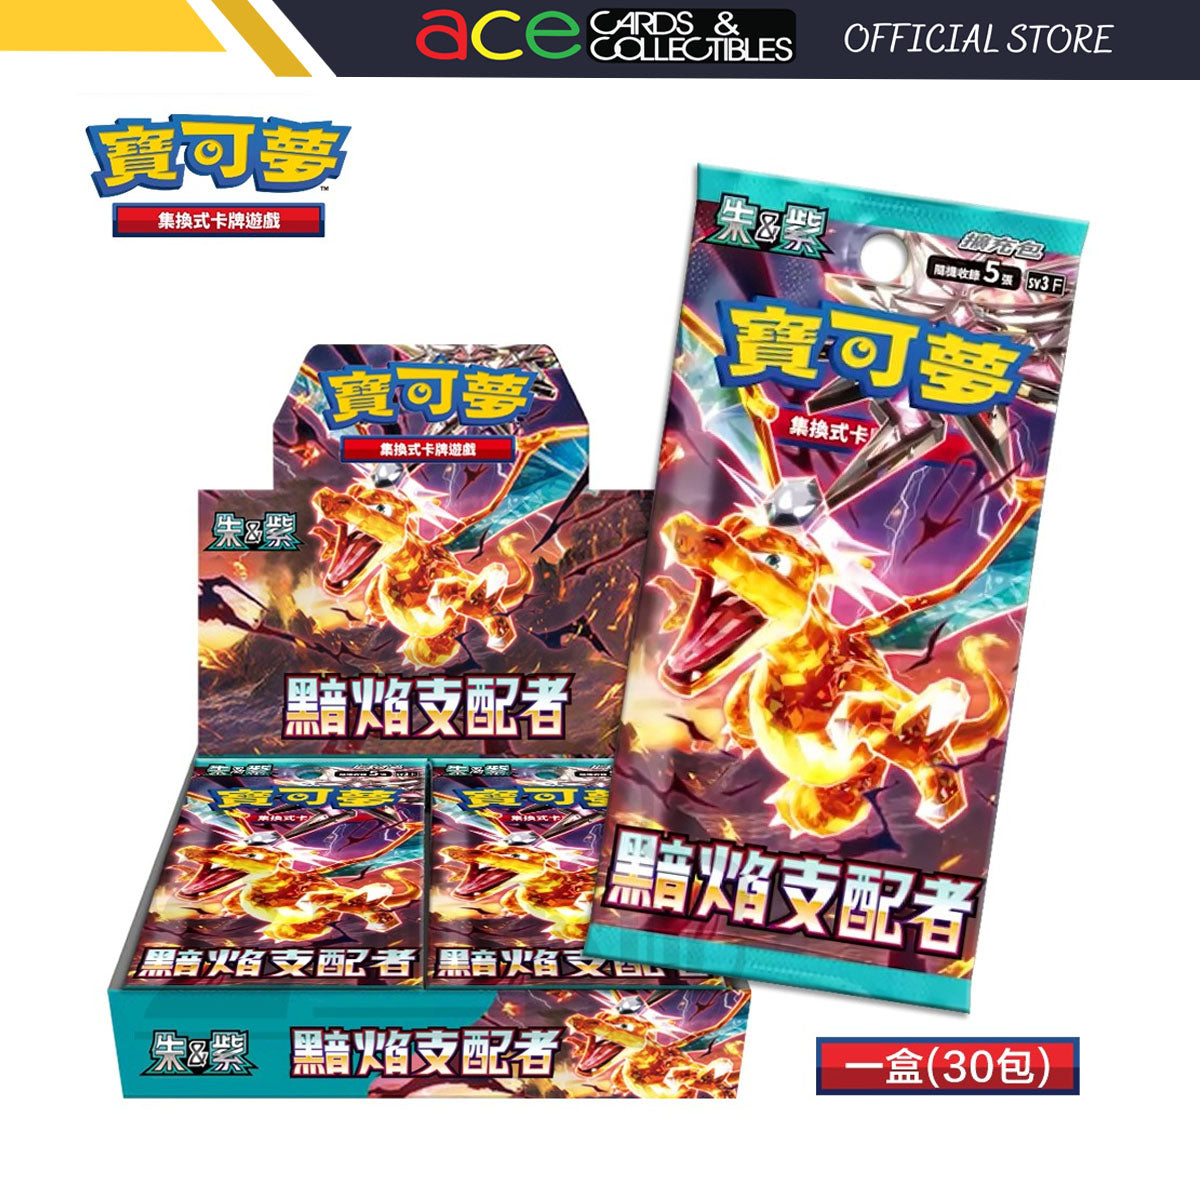 Pokémon TCG 朱 & 紫 强化擴充包 寶可夢卡牌 -黯焰支配著- [SV3F] (Chinese)-Booster Pack-The Pokémon Company International-Ace Cards & Collectibles